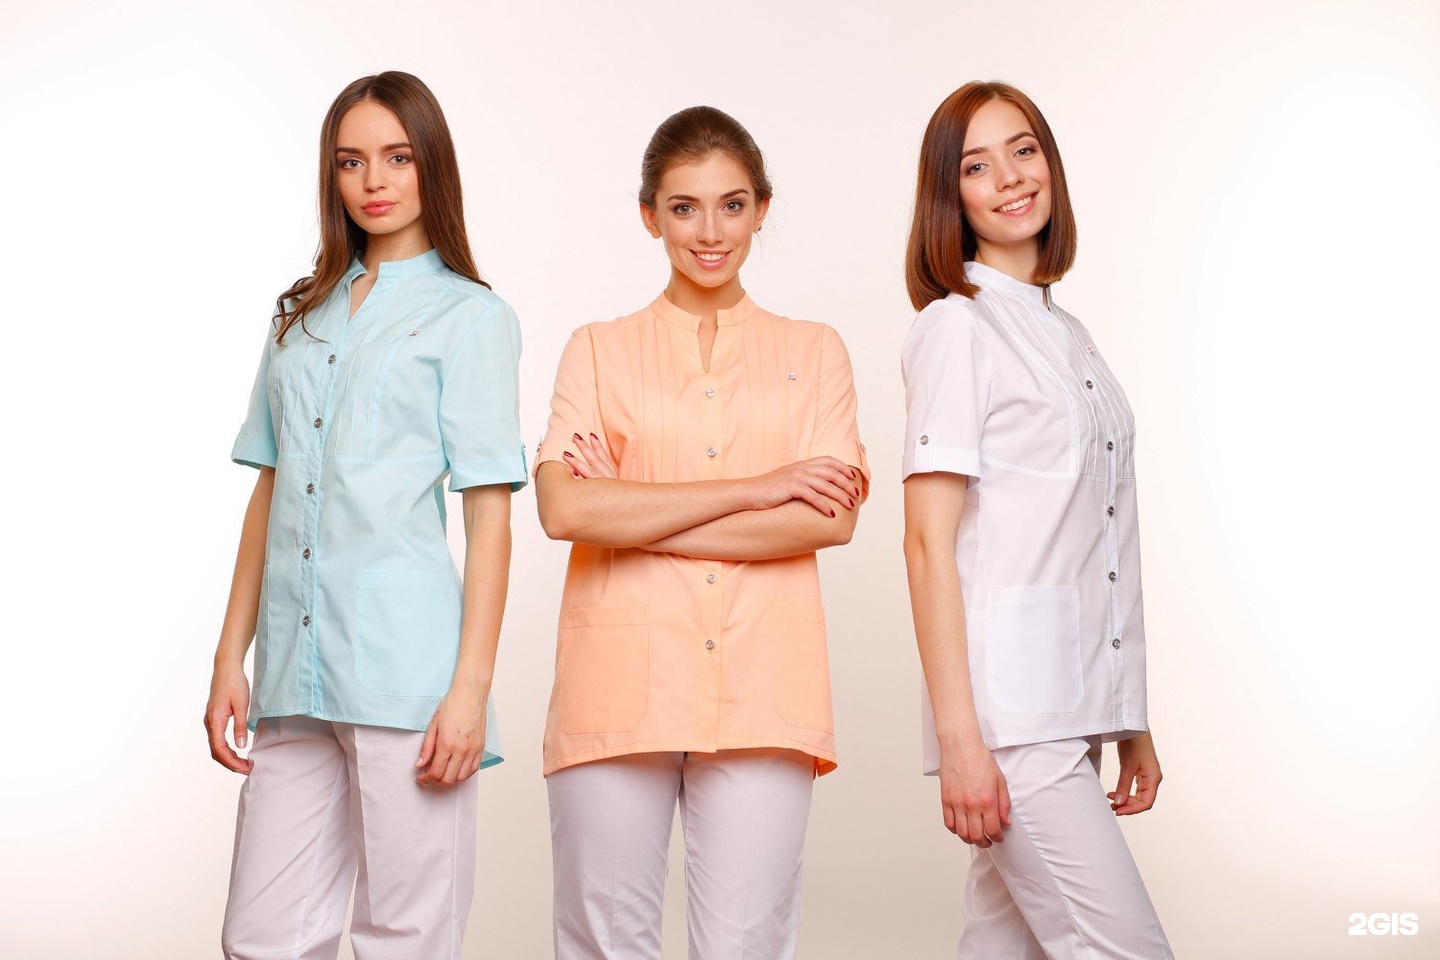 Валберис интернет магазин официальный сайт москва каталог одежды платья как продавать товары с вайлдберриз на маркетплейсах